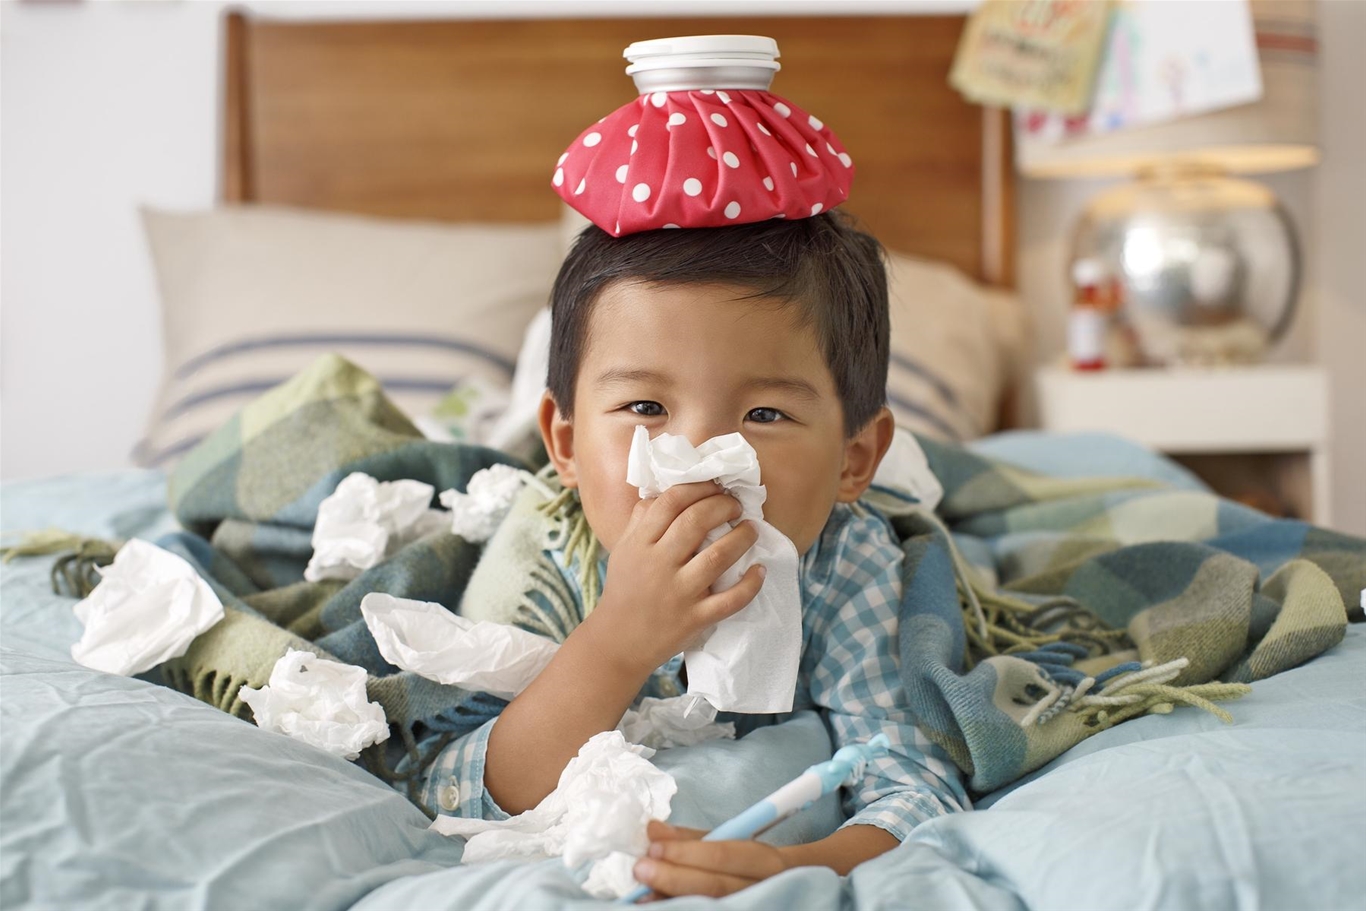 Thực tế, trẻ nhỏ dưới 2 tuổi thường dễ mắc cảm cúm hơn vì hệ miễn dịch vẫn chưa phát triển hoàn thiện